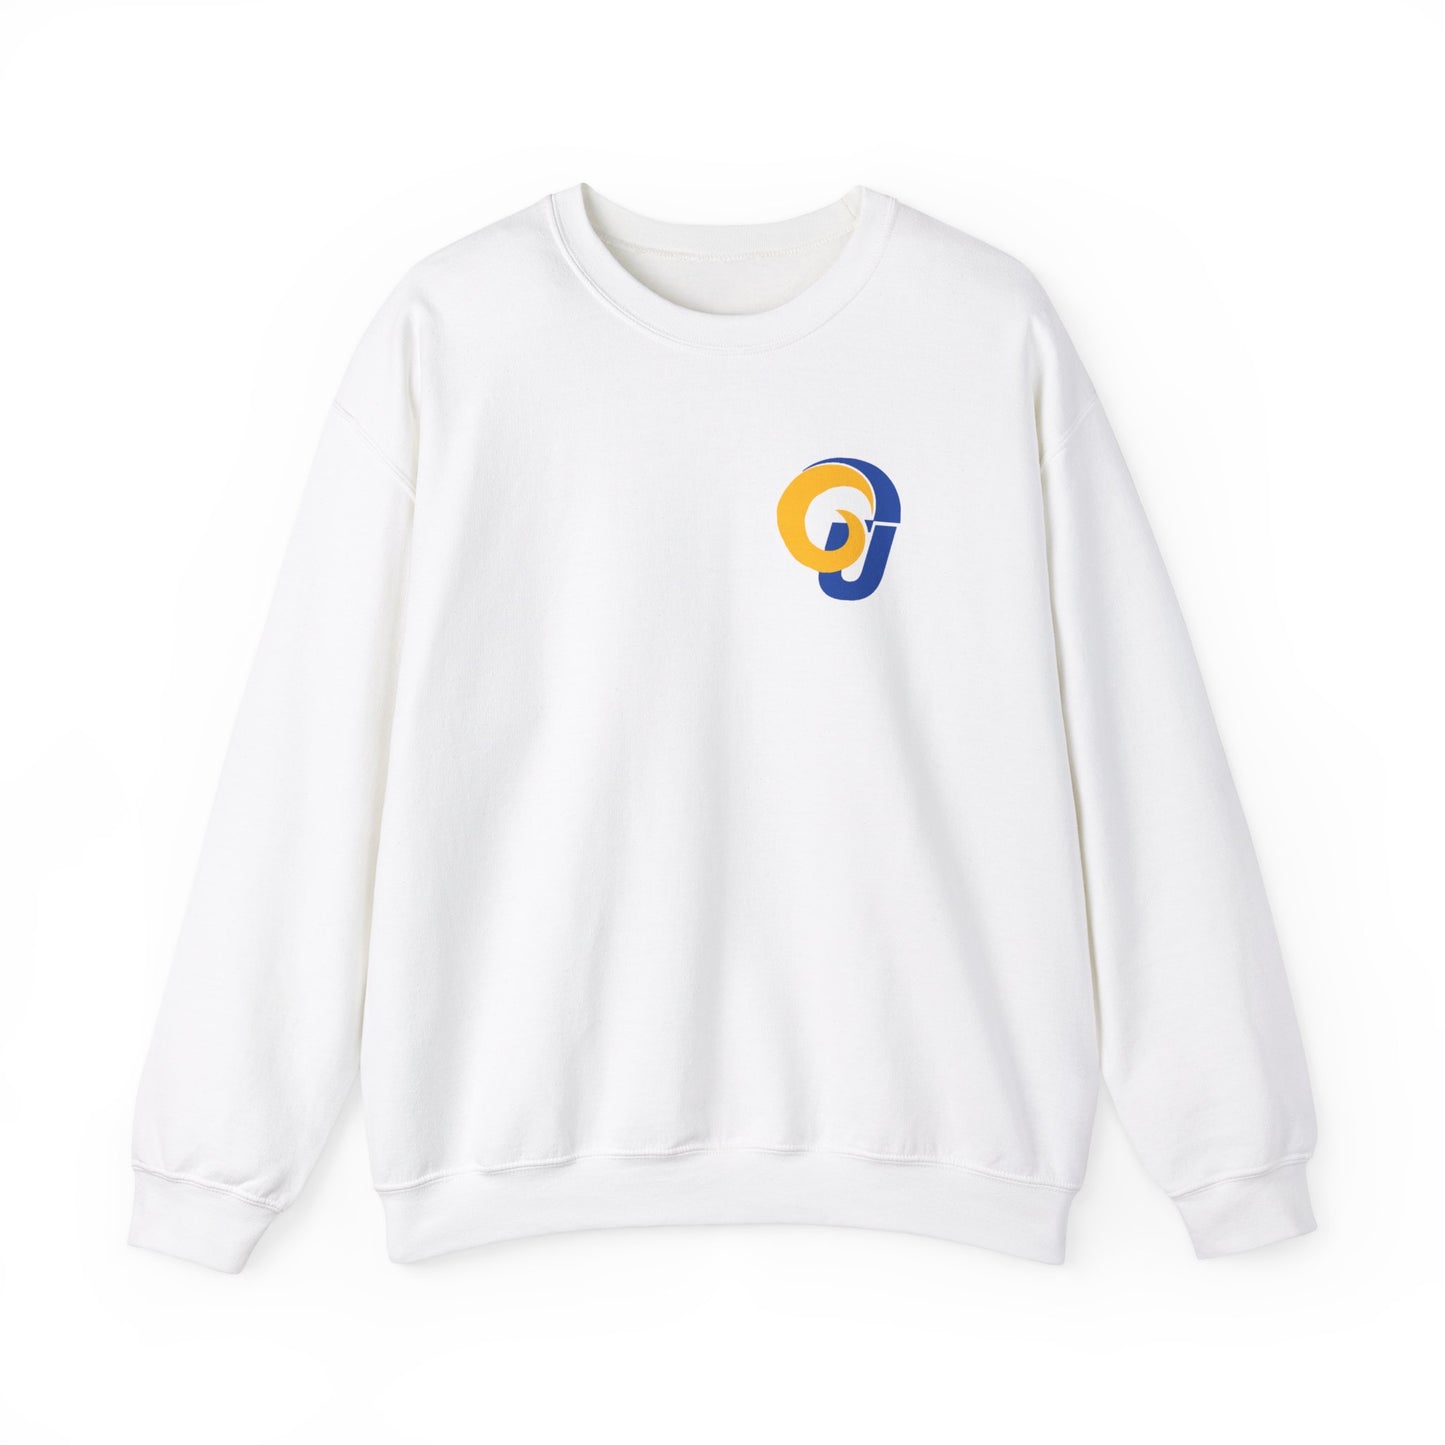 Rams Basketball Game Day Sweatshirt